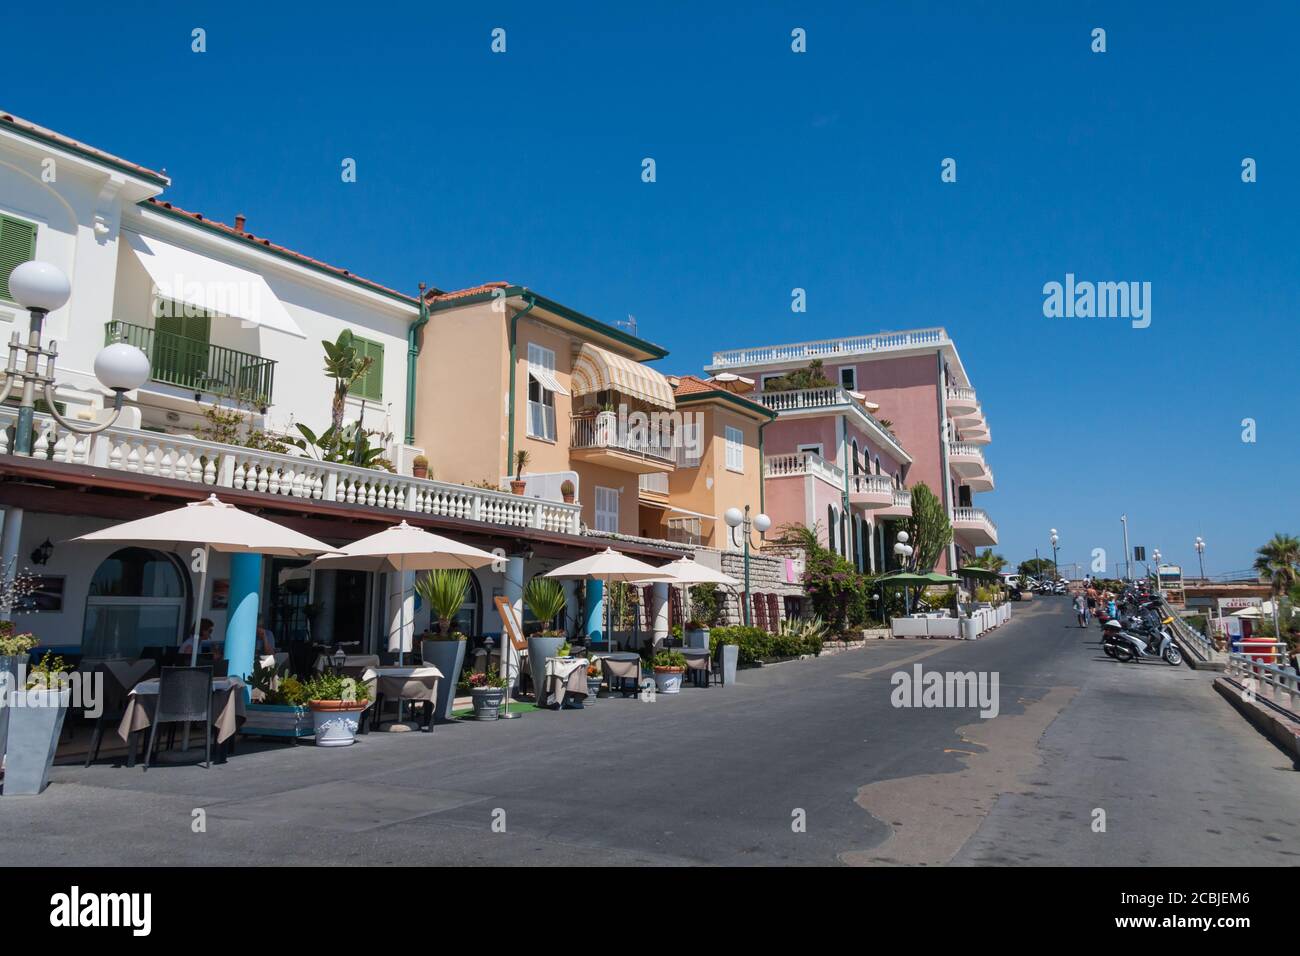 Bordighera, Ligurie, Italie juillet 25 2015: Route en bord de mer à Bordighera, Ligurie, Italie en été. Des cafés et des restaurants en plein air bordent cette route. Banque D'Images